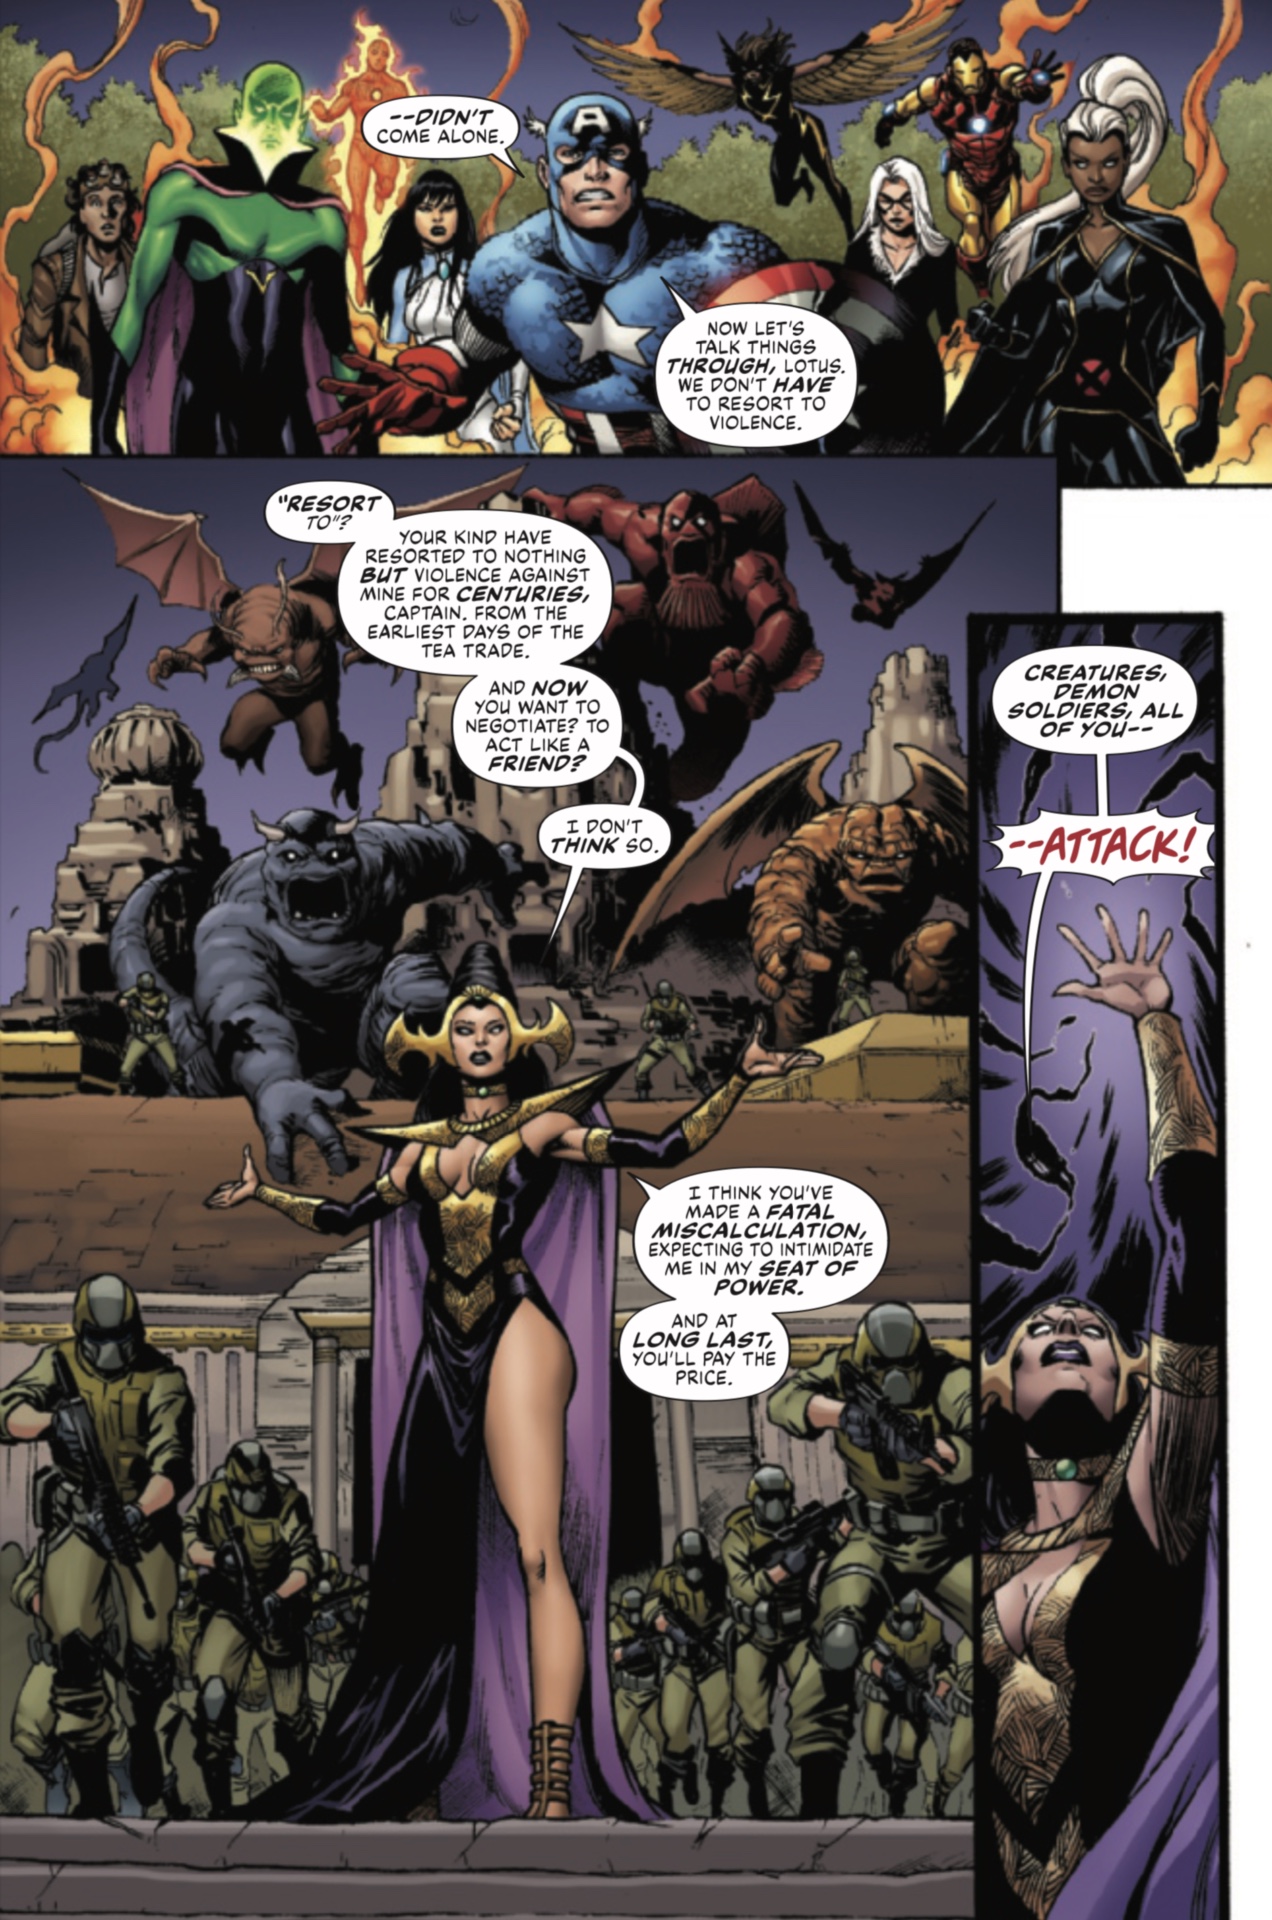 Marvels #7 sayfası